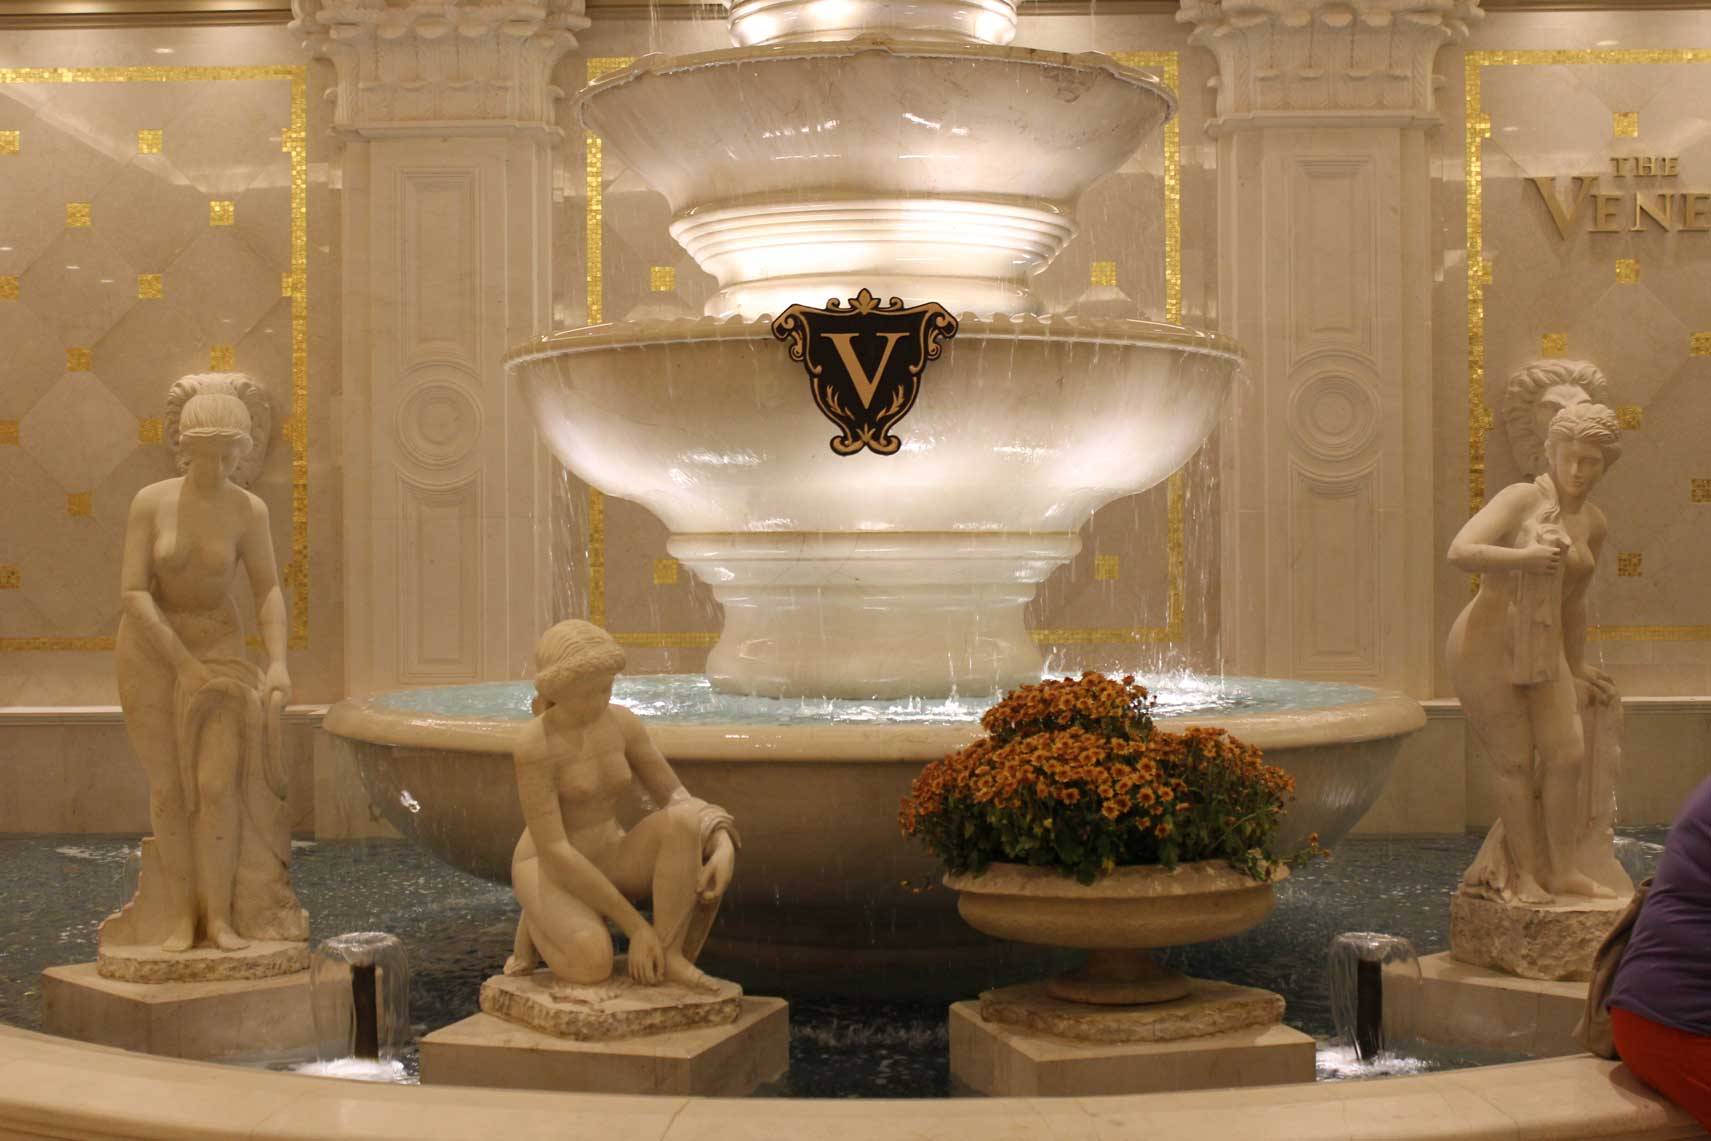 Venetian fountain